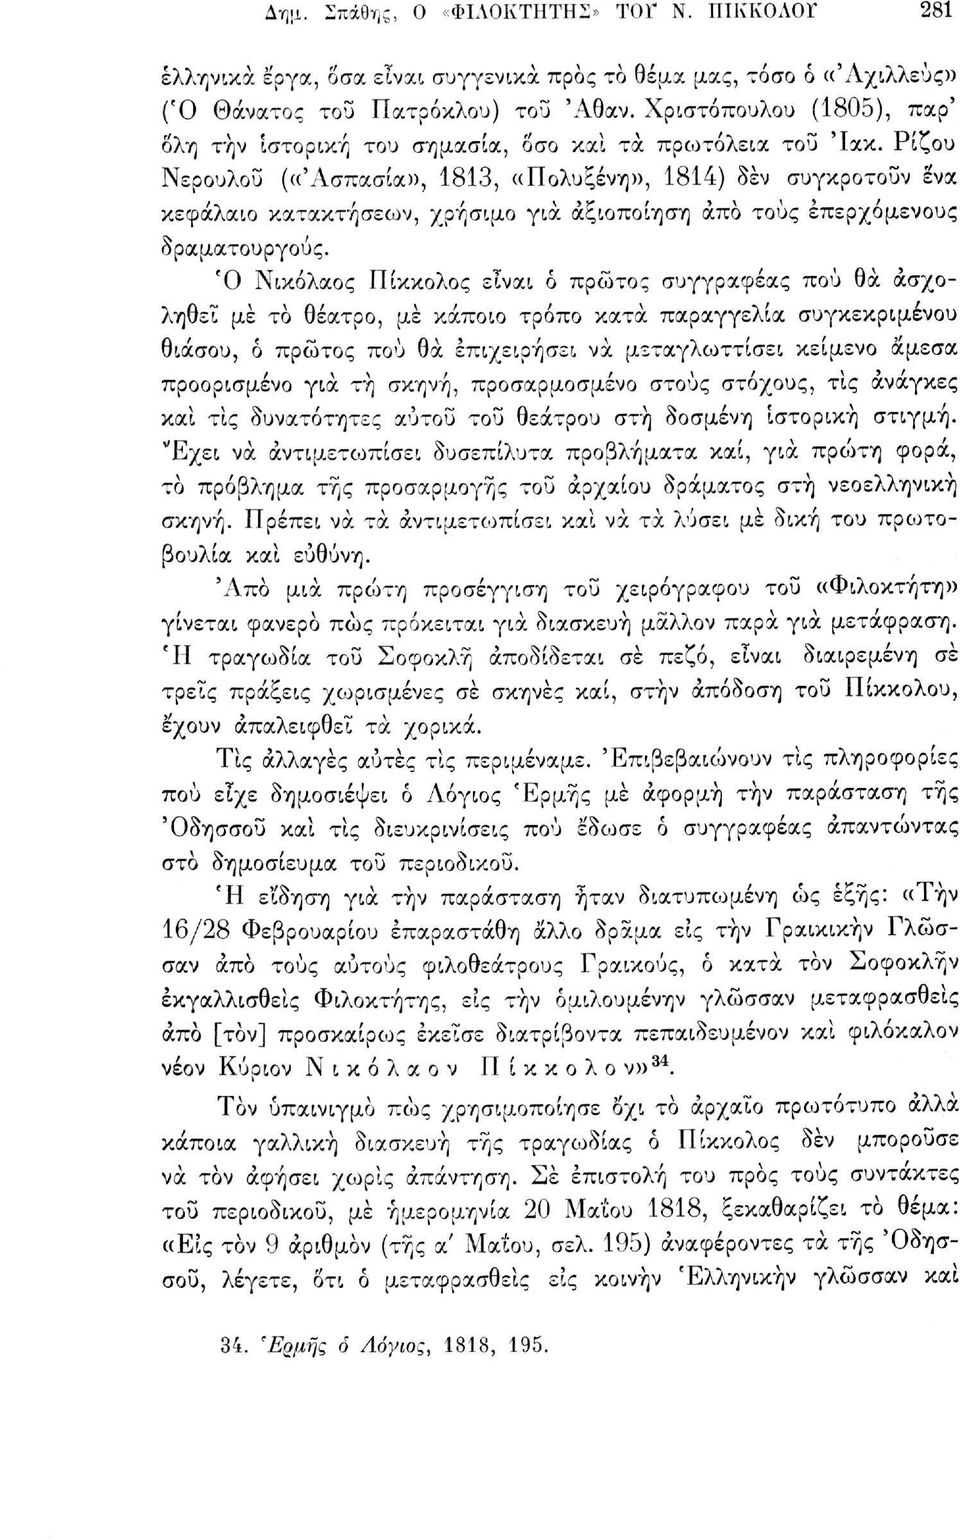 Ρίζου Νερουλού («Ασπασία», 1813, ((Πολυξένη», 1814) δεν συγκροτούν ένα κεφάλαιο κατακτήσεων, χρήσιμο για αξιοποίηση άπο τους επερχόμενους δραματουργούς.